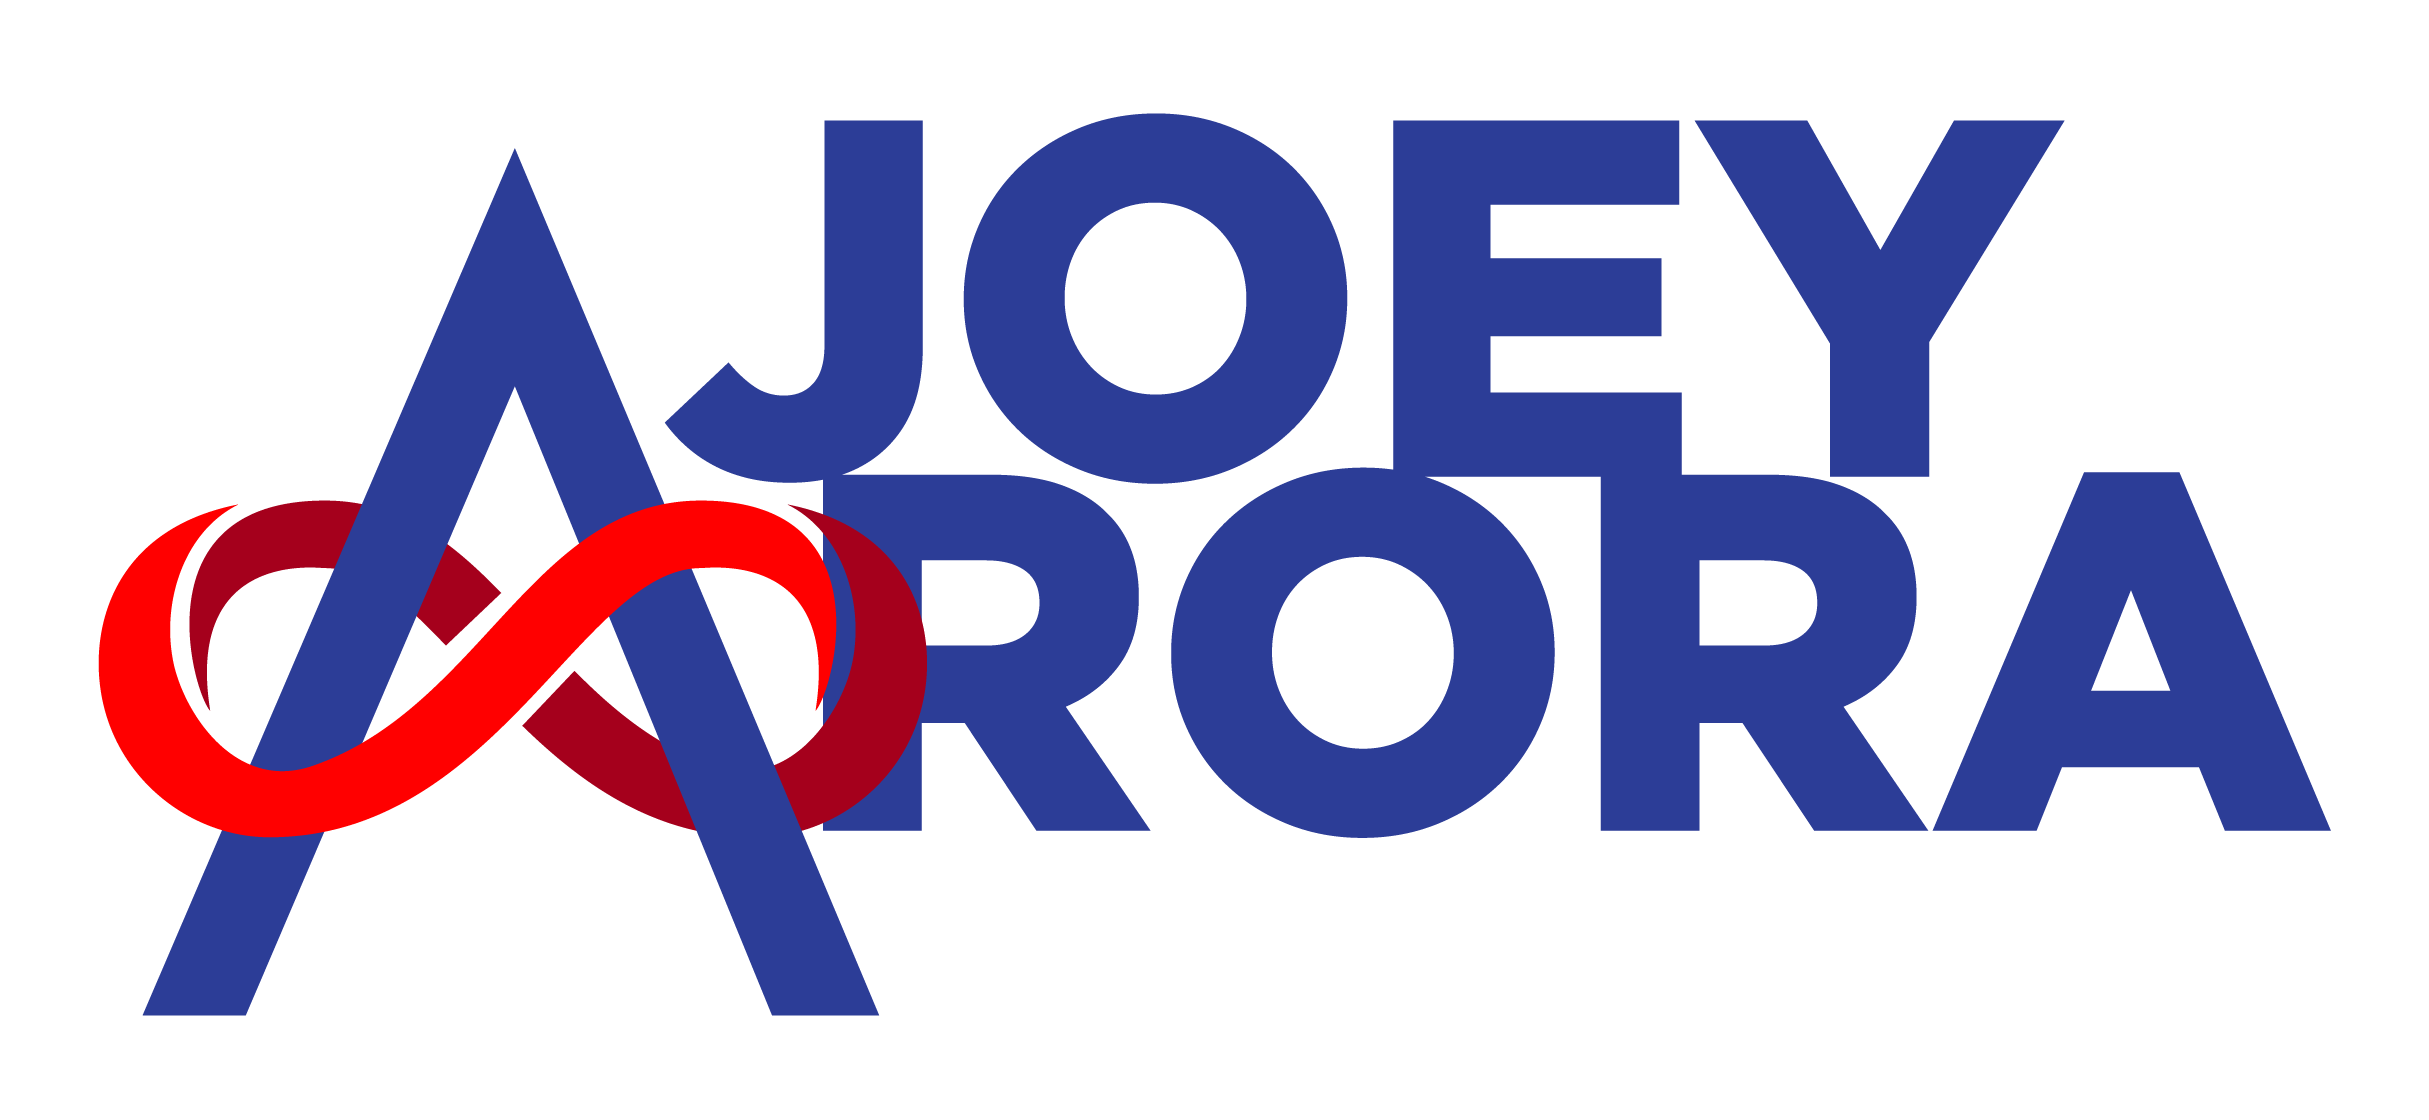 Joey Arora Logo-01 - Joey Arora.png